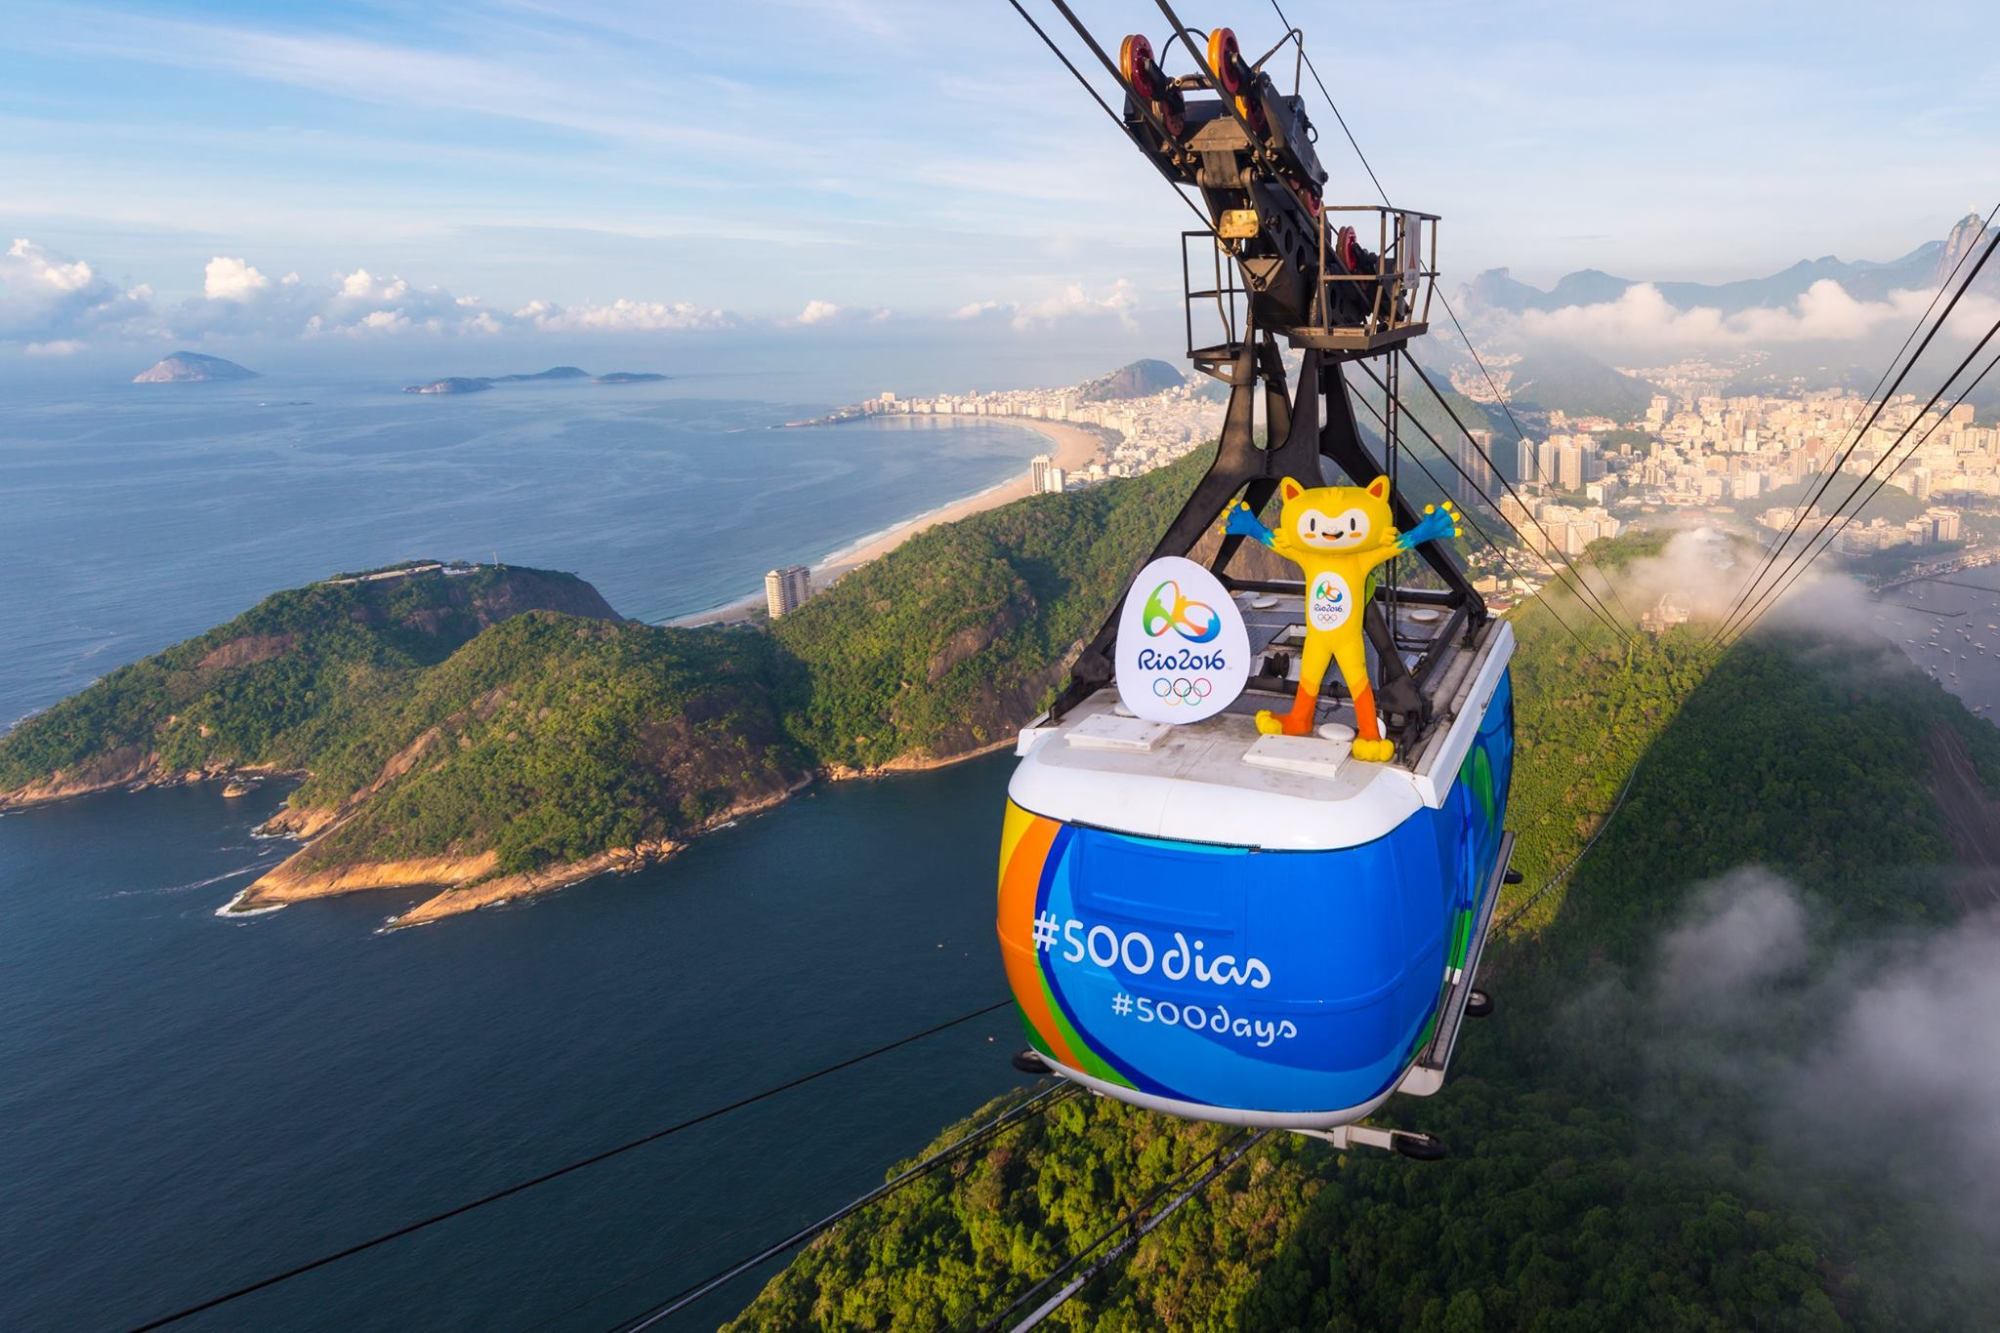 Rio2016 Mascots